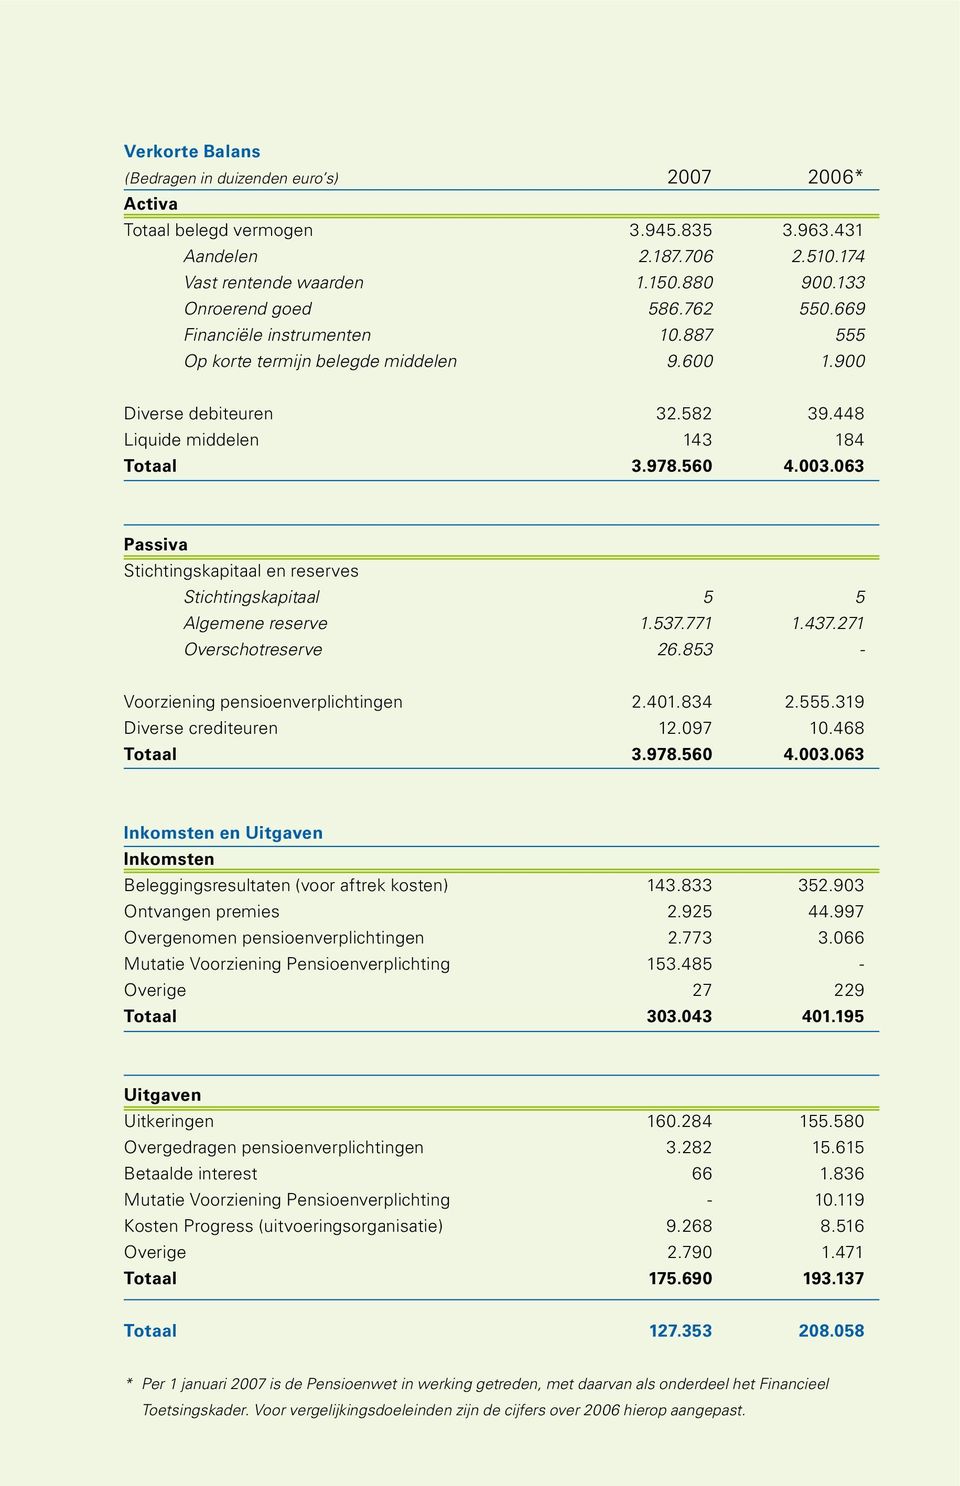 063 Passiva Stichtingskapitaal en reserves Stichtingskapitaal 5 5 Algemene reserve 1.537.771 1.437.271 Overschotreserve 26.853 - Voorziening pensioenverplichtingen 2.401.834 2.555.